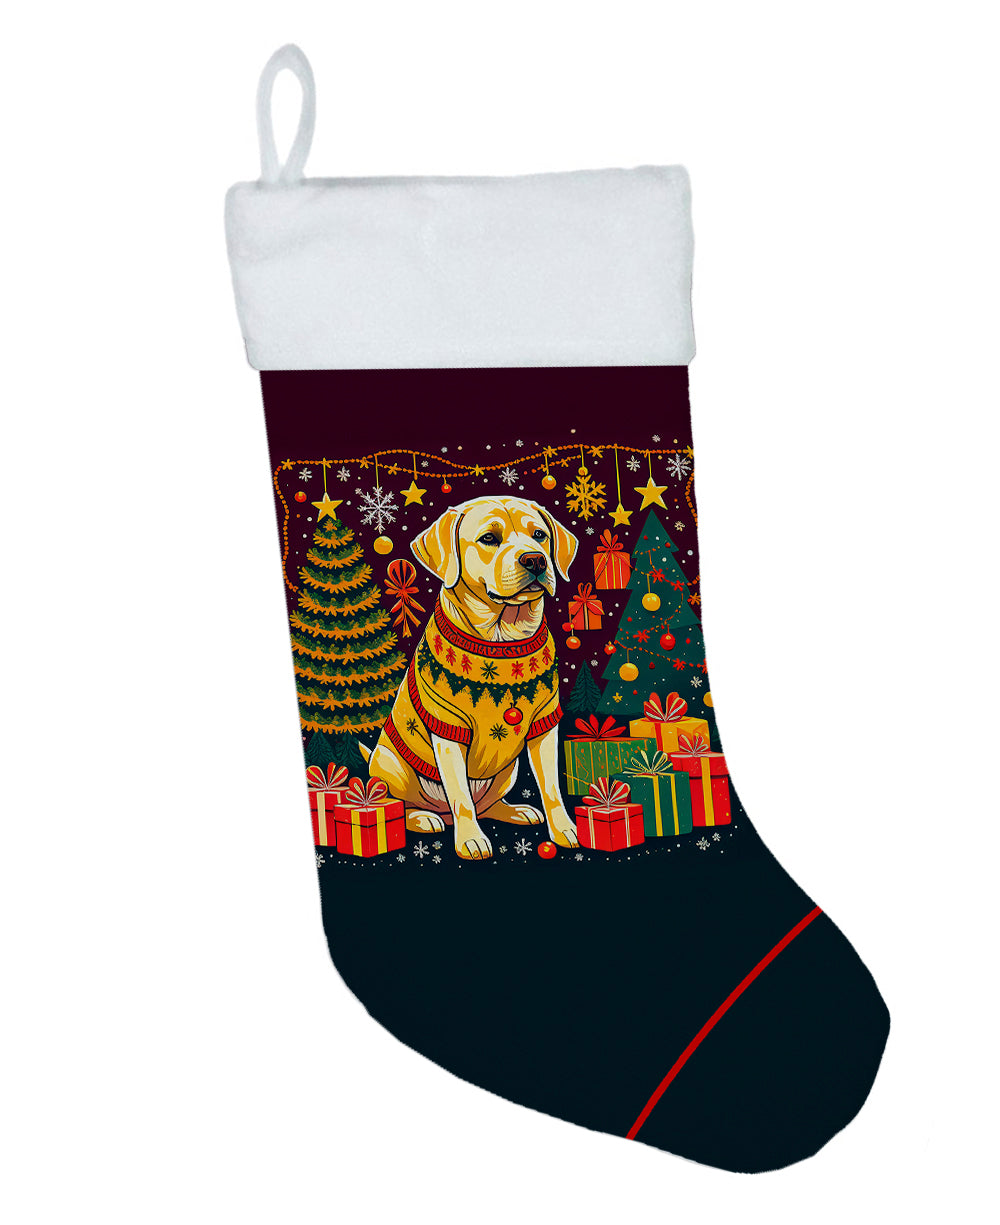 Buy this Yellow Labrador Retriever Christmas Christmas Stocking